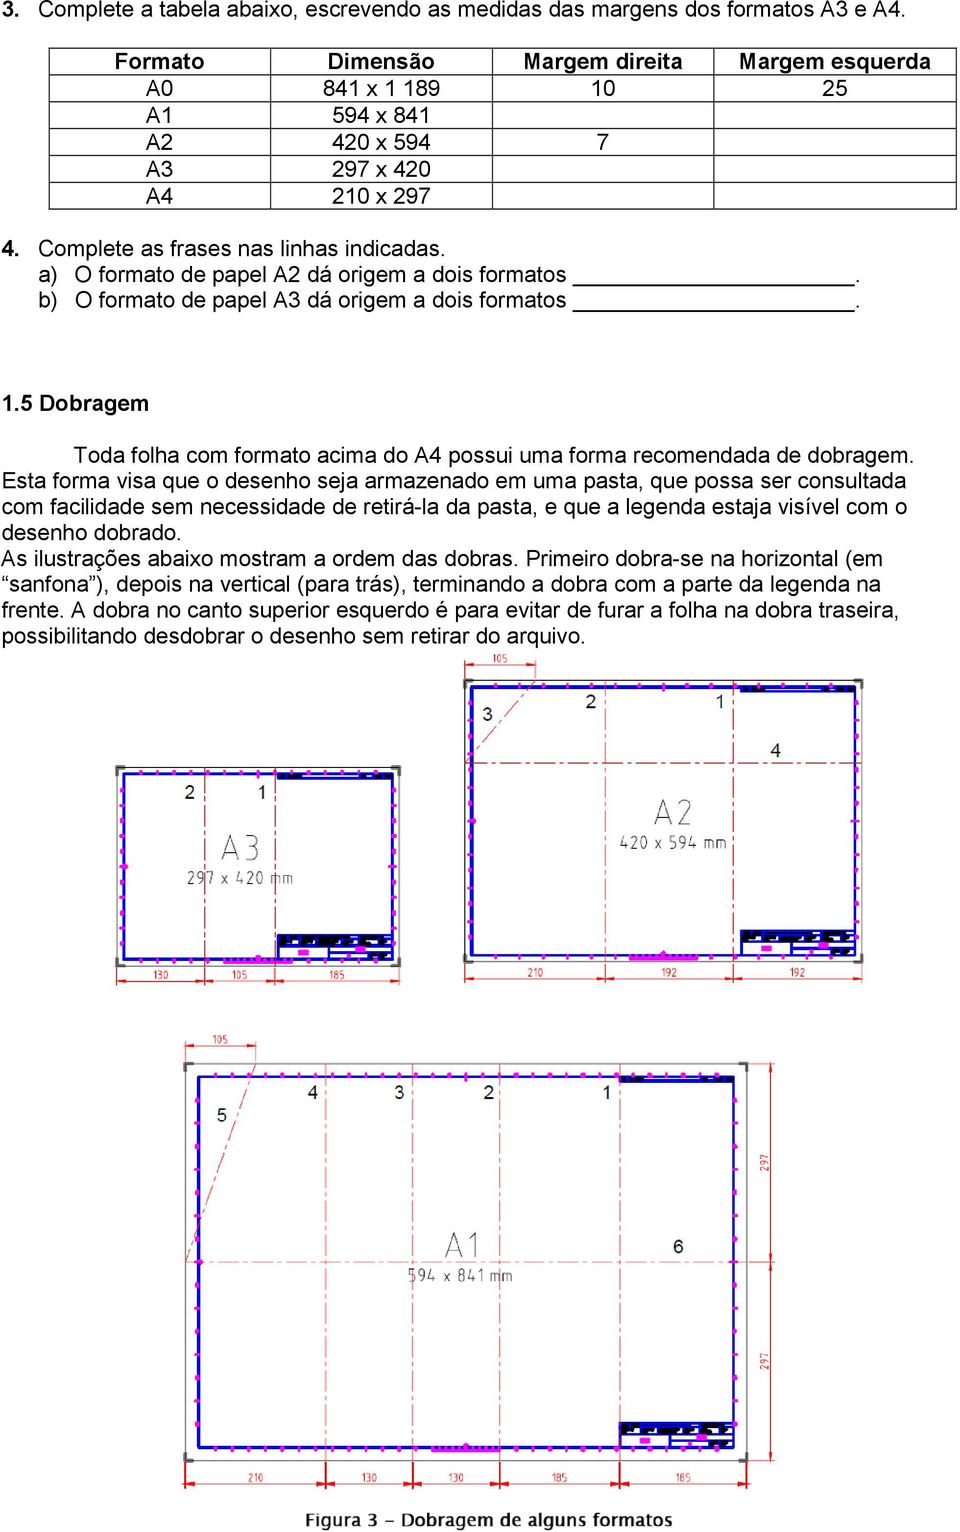 a) O formato de papel A2 dá origem a dois formatos. b) O formato de papel A3 dá origem a dois formatos. 1.5 Dobragem Toda folha com formato acima do A4 possui uma forma recomendada de dobragem.